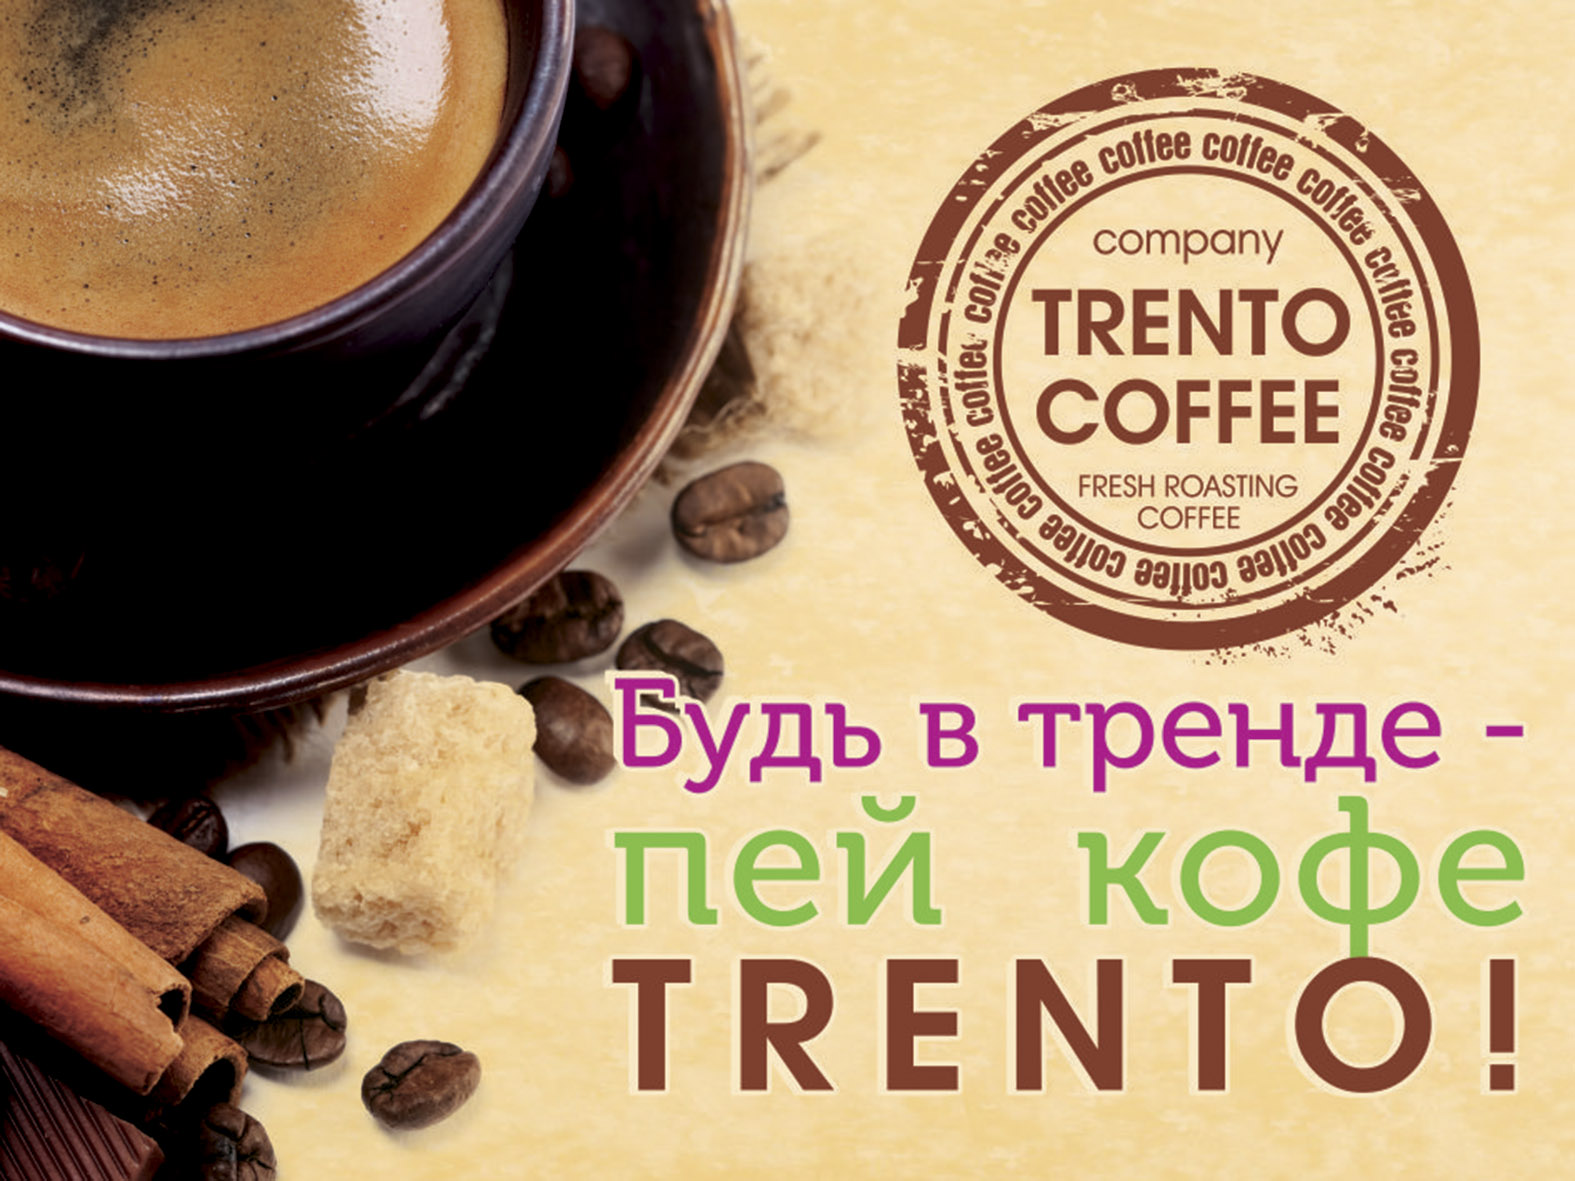 Кофе есть кофейня. Кофе в июне. Чай, кофе, добро пожаловать!. Фреш кофе. Визитки dobro кофе.